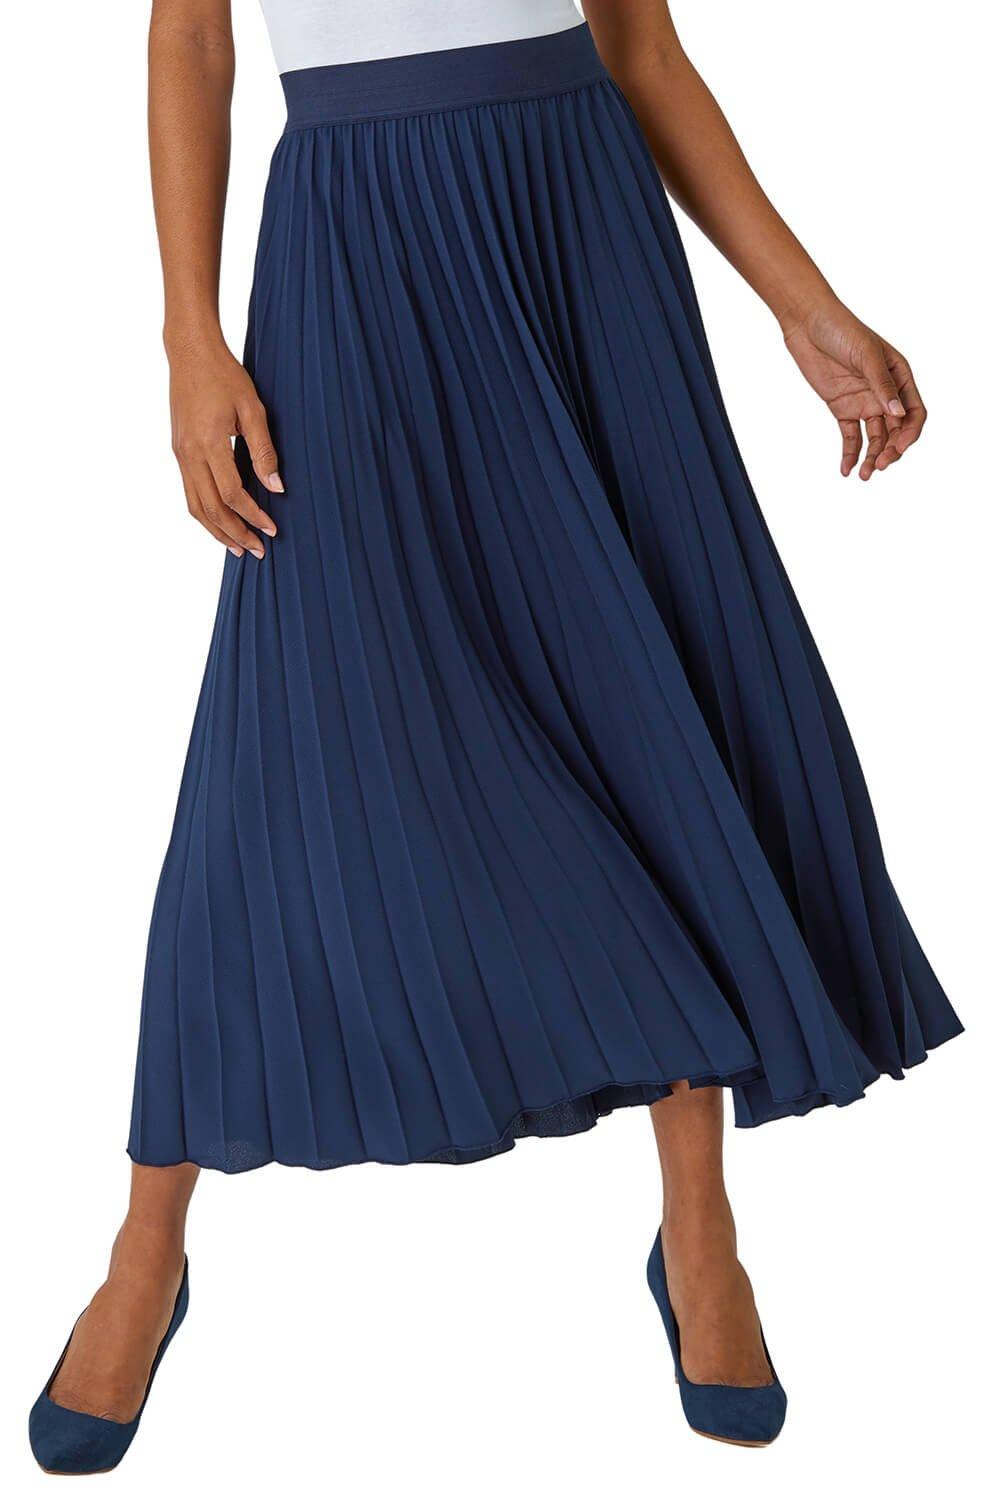 Плиссированная юбка-макси Roman, синий юбка женская плиссированная тюлевая макси юбка джокер с эластичной завышенной талией сетчатая макси юбка пачка на лето